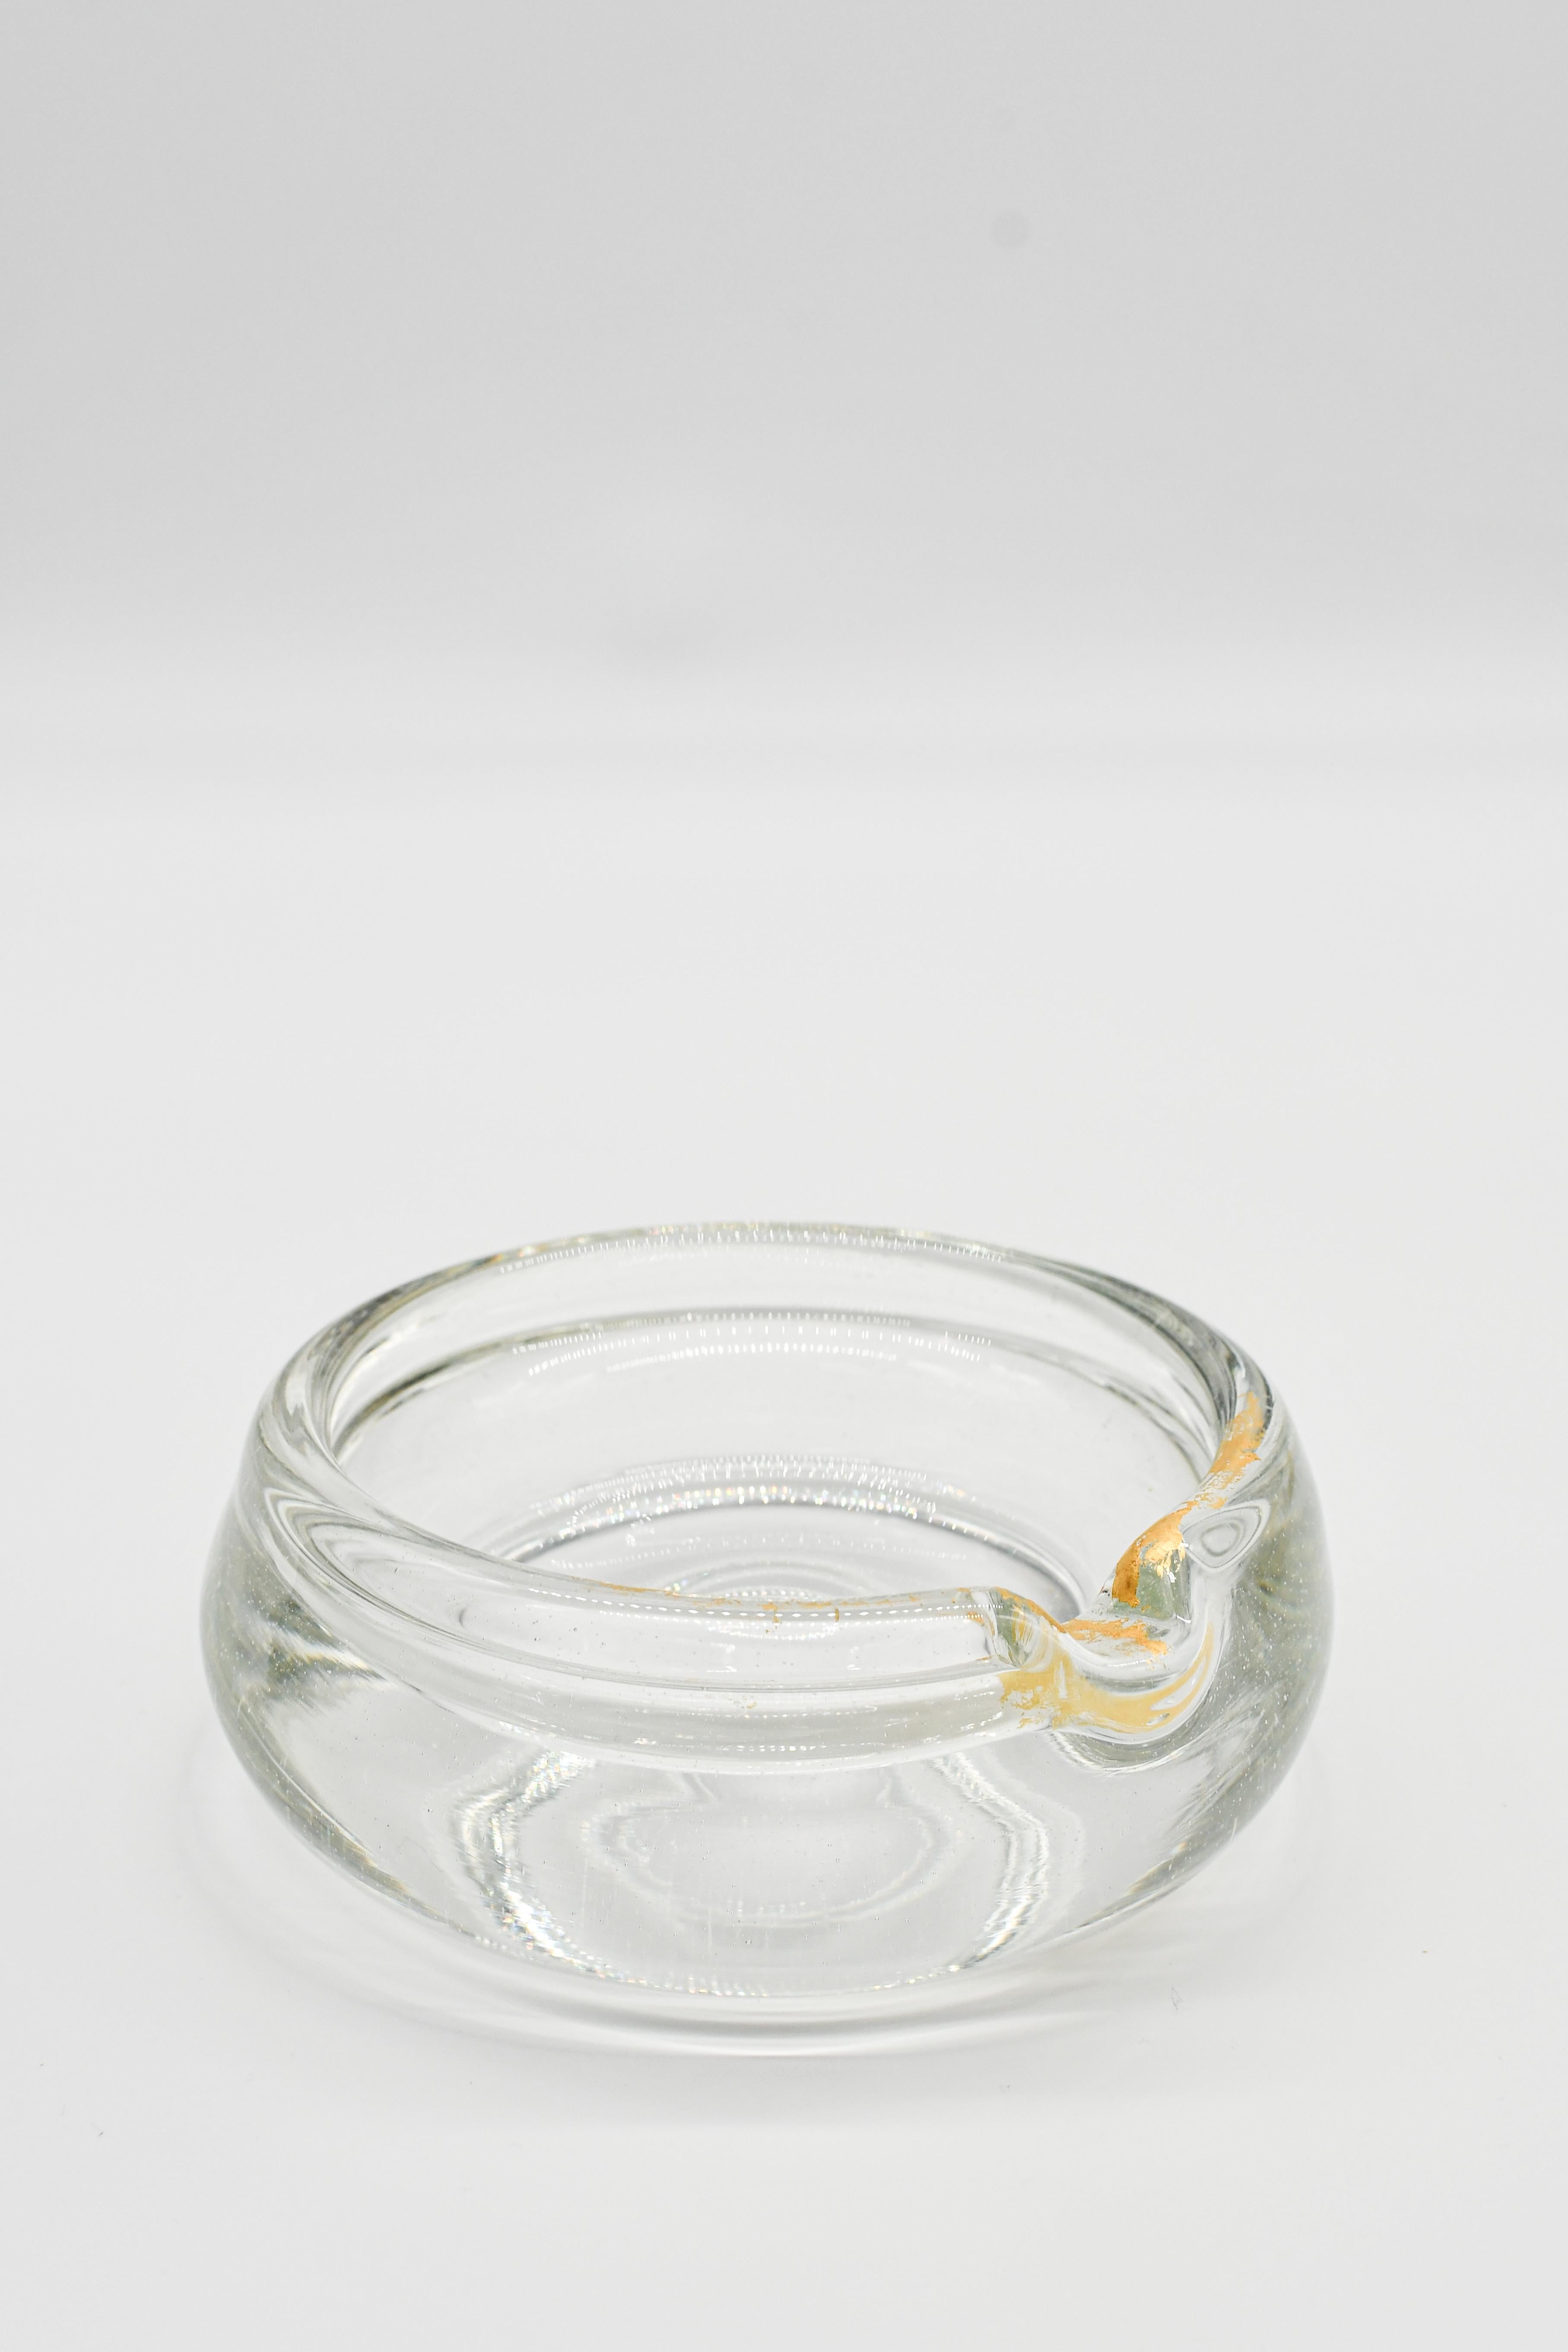 24K ist ein raffiniertes Whiskey-Set, das aus klarem, mundgeblasenem Glas handgefertigt und mit reinem 24-karätigem Blattgold verziert ist, was eine außergewöhnliche Handwerkskunst darstellt. Neben den einzigartigen Bechern enthält dieses Set auch